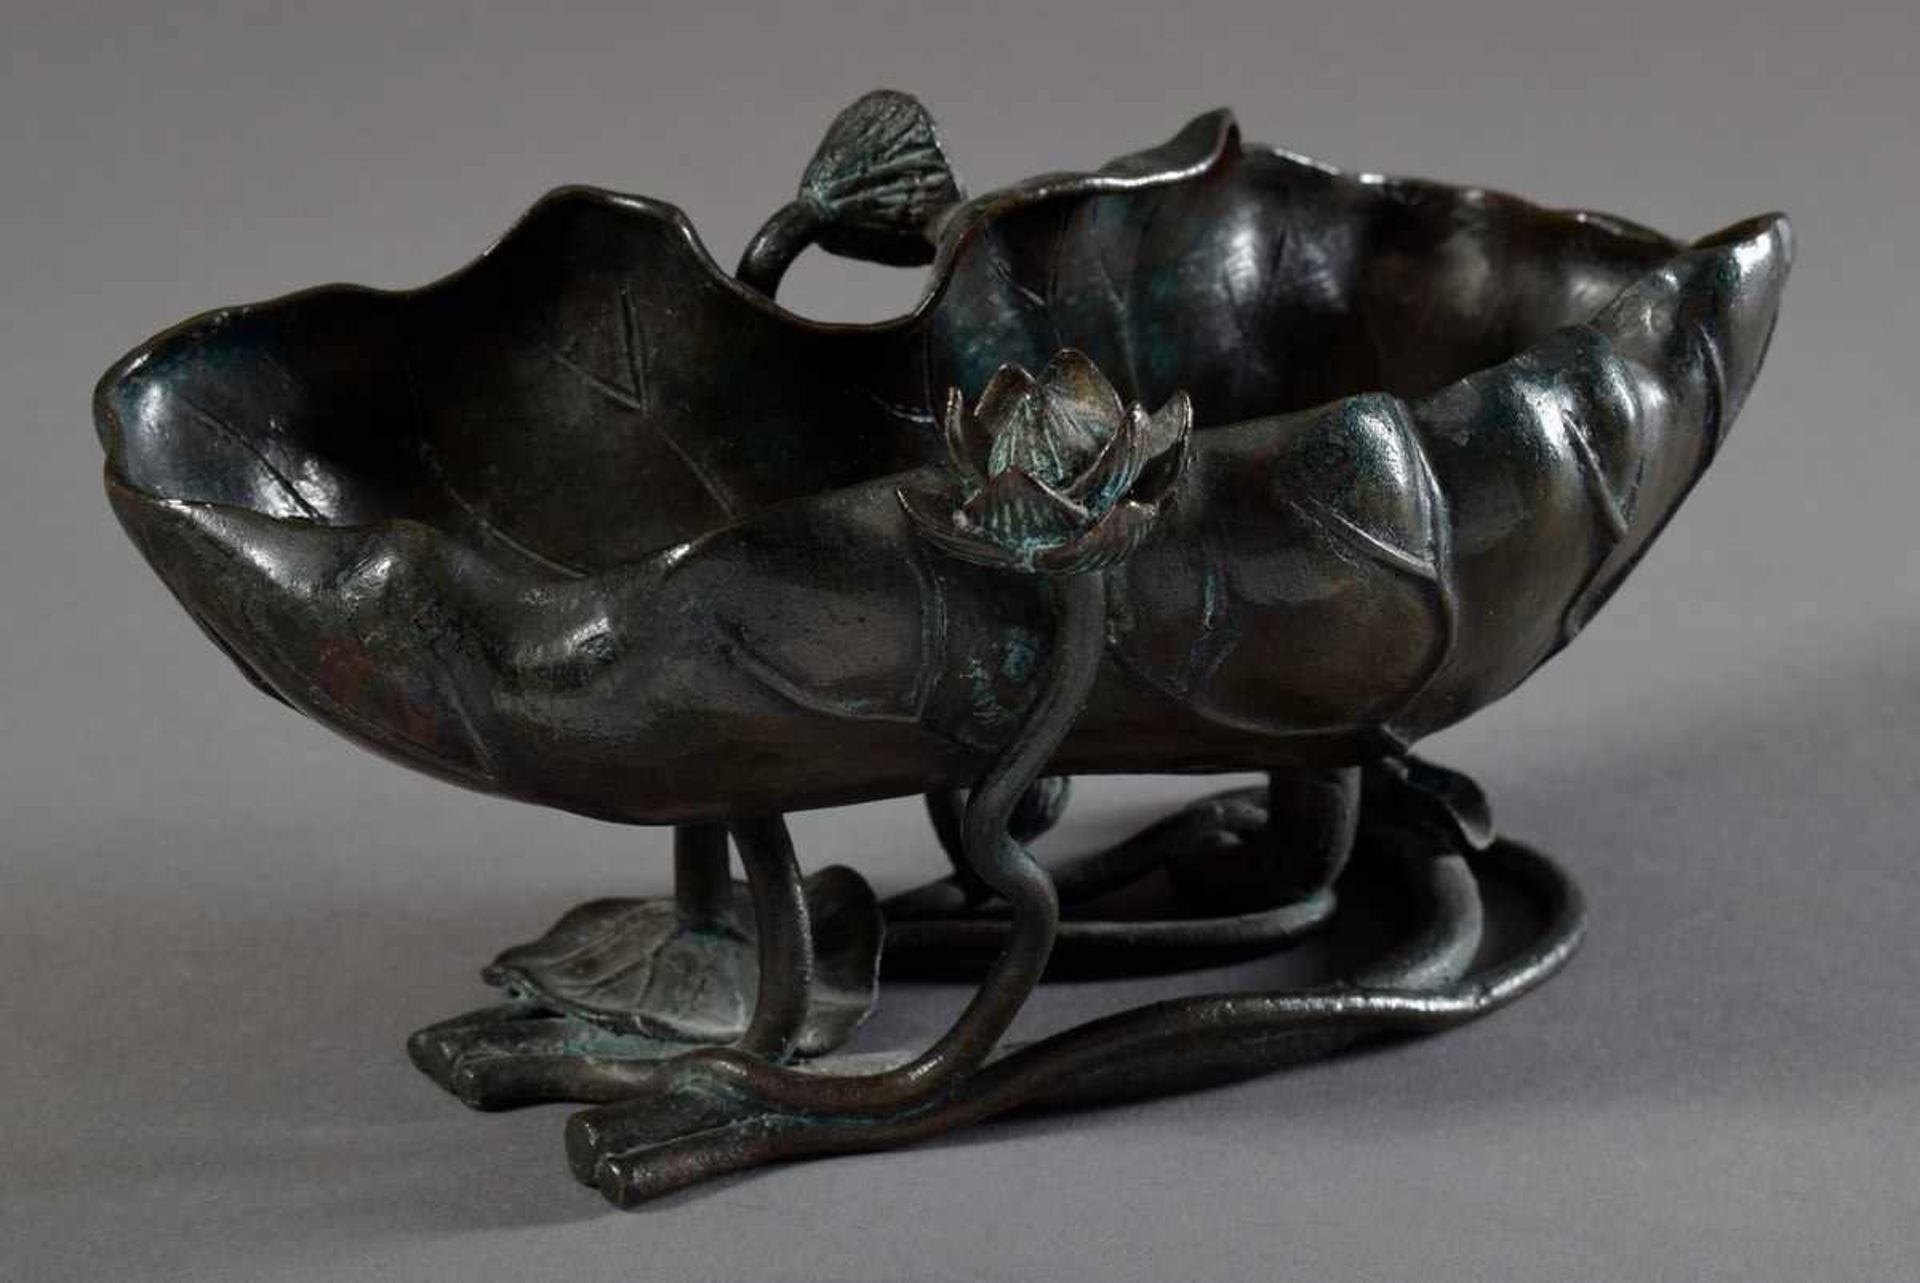 Japanische Bronze Schale "Lotusblatt", gemarkt "Japan", 20. Jh., 9,5x20x9cmJapanese bronze bowl " - Image 2 of 6